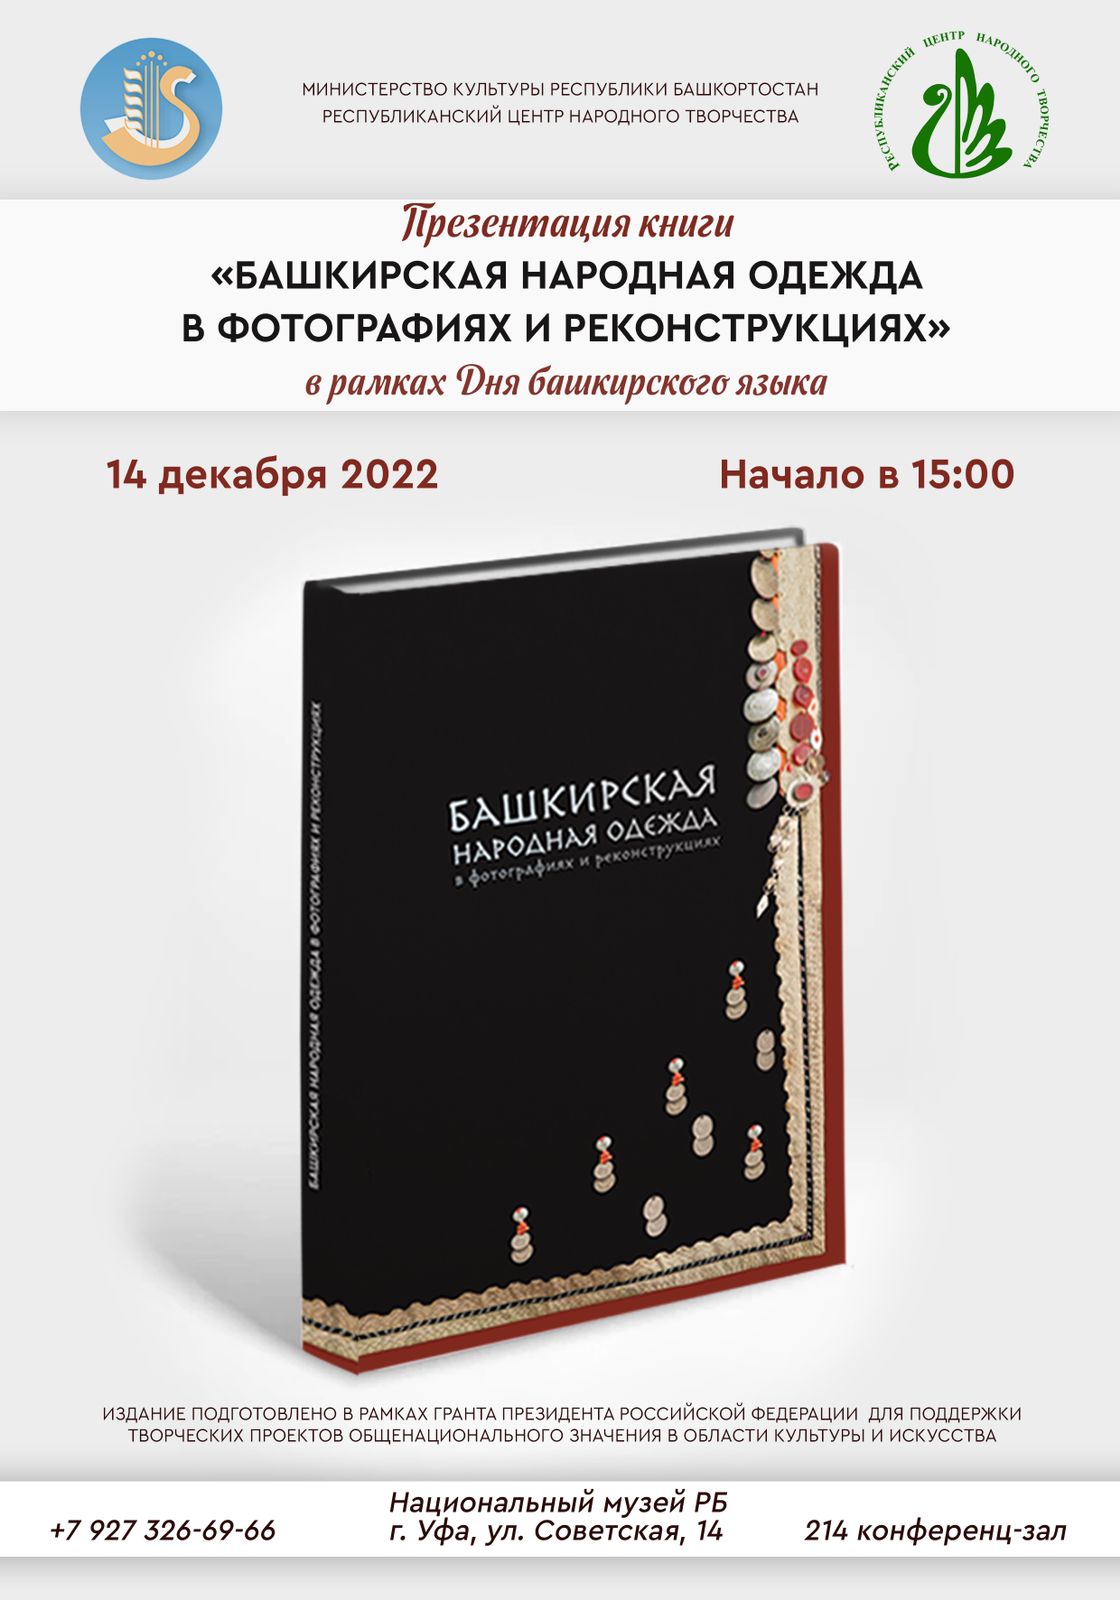 В Уфе состоится презентация книги «Башкирская народна одежда в фотографиях и реконструкциях»